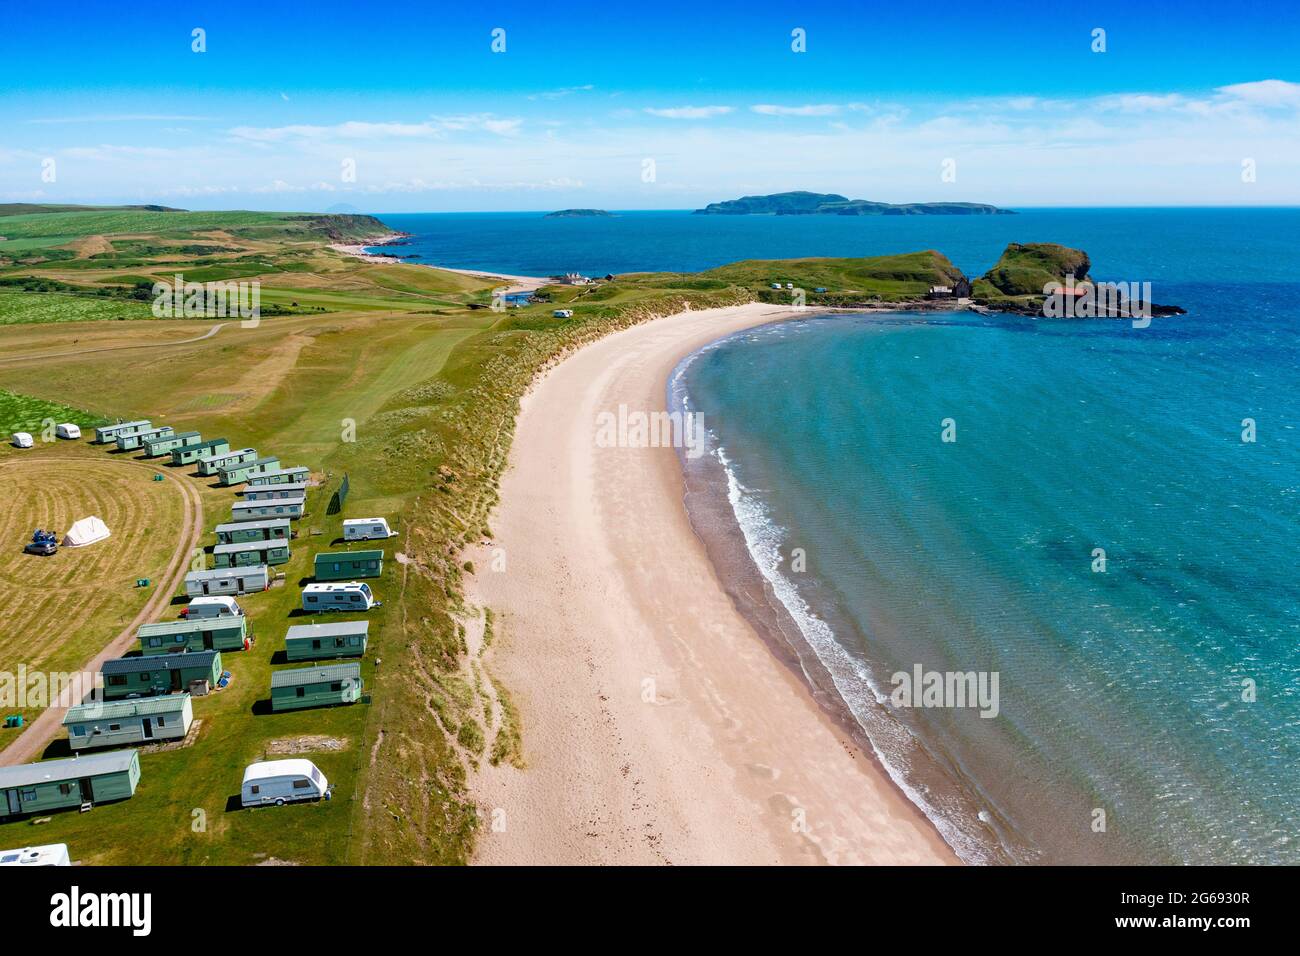 Vue aérienne depuis le drone de Dunaverty Bay Beach sur la péninsule de Kintyre, Southend, Argyll et Bute, Écosse, Royaume-Uni Banque D'Images